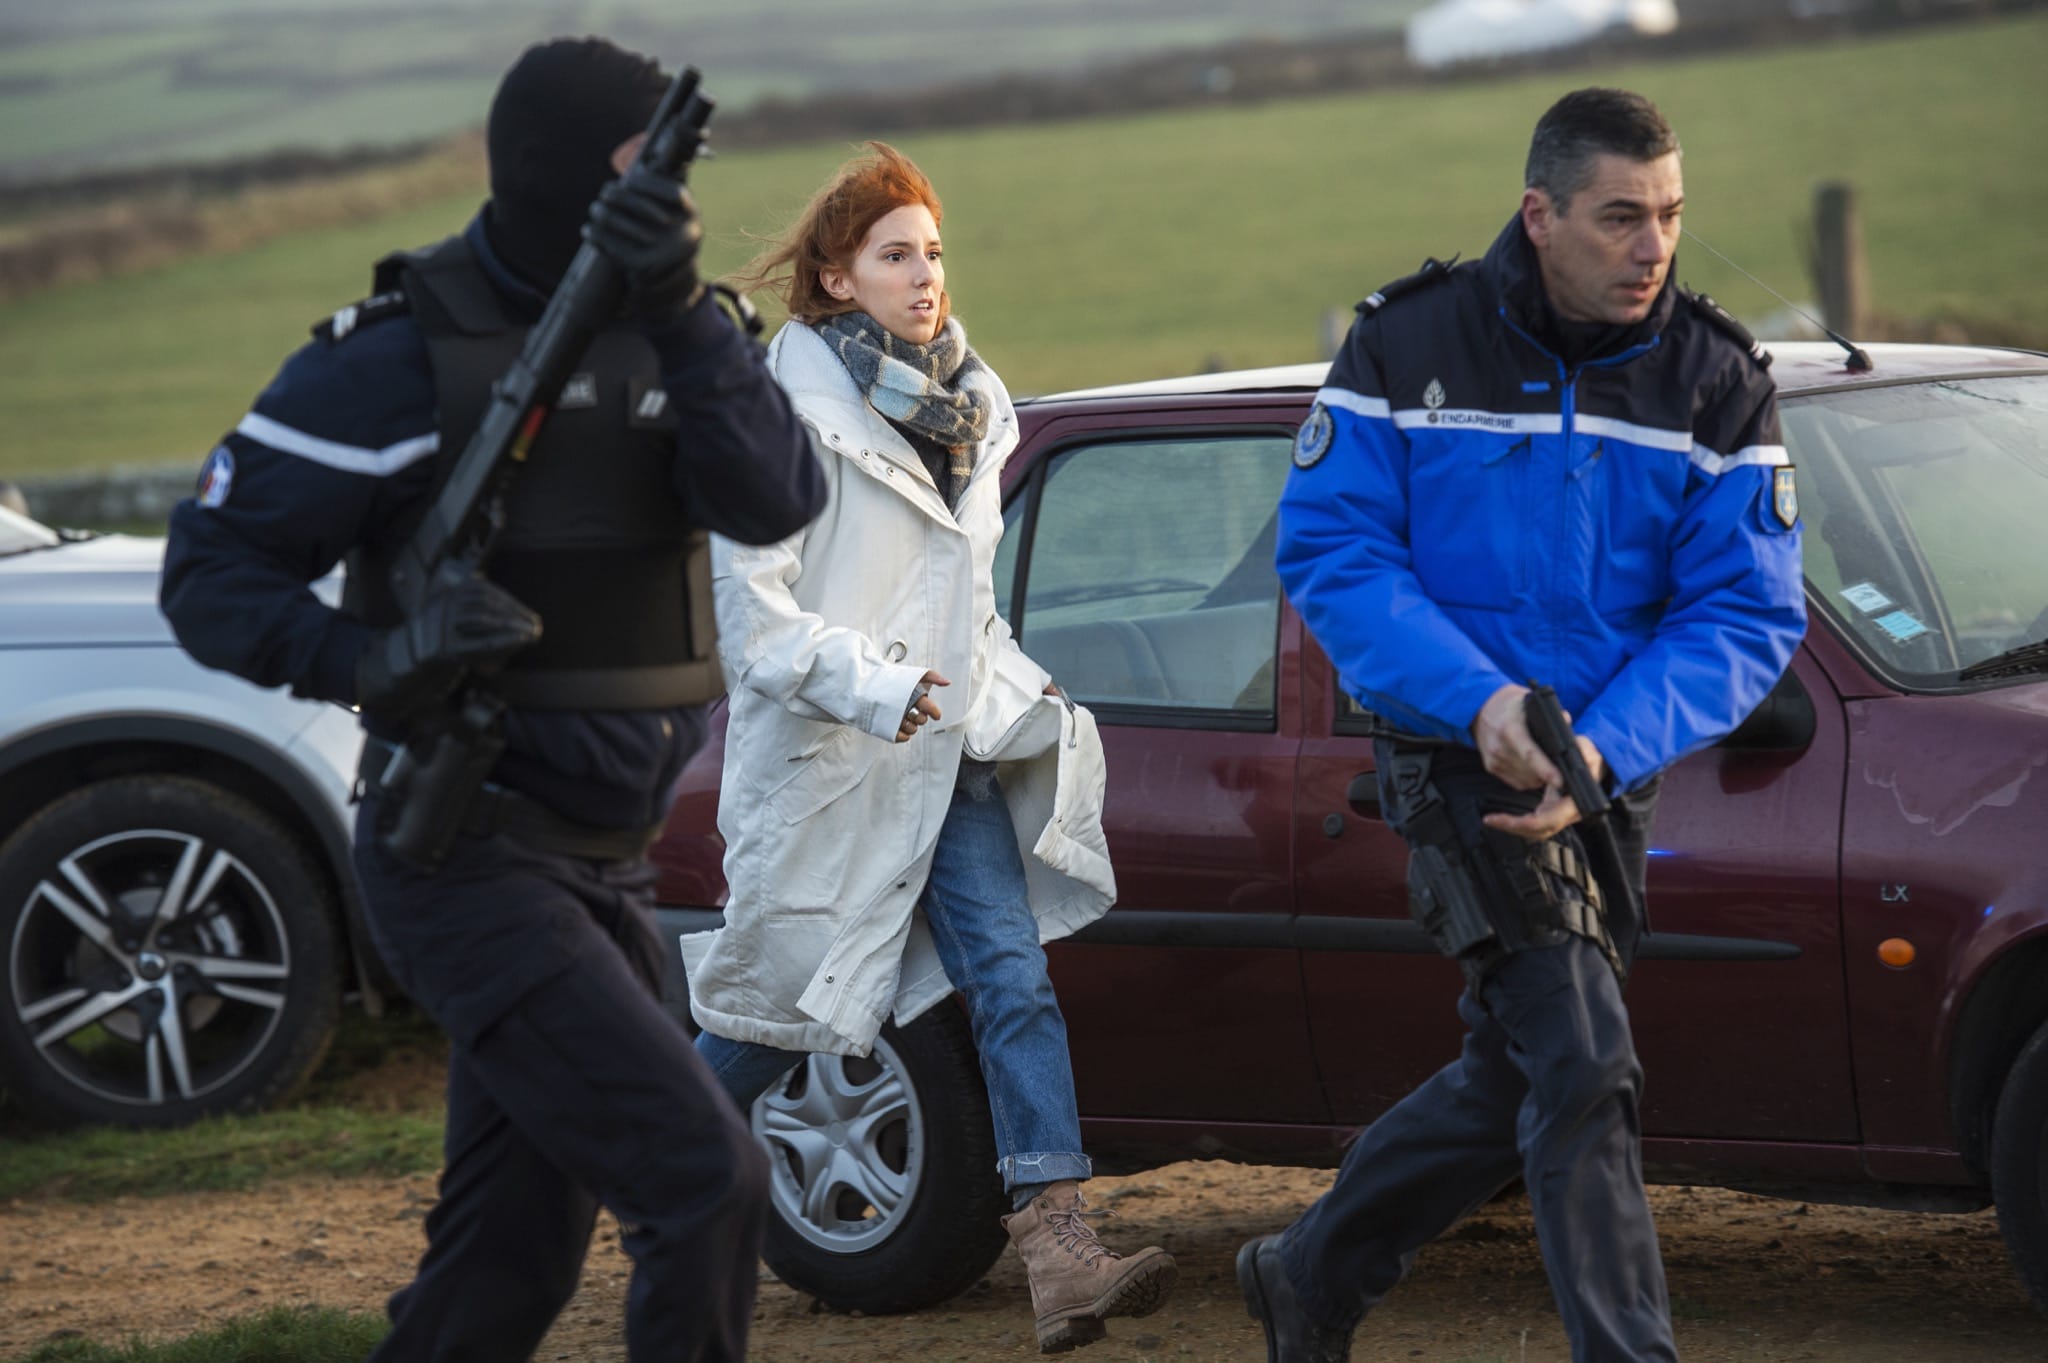 Meurtres en Cotentin image téléfilm policier